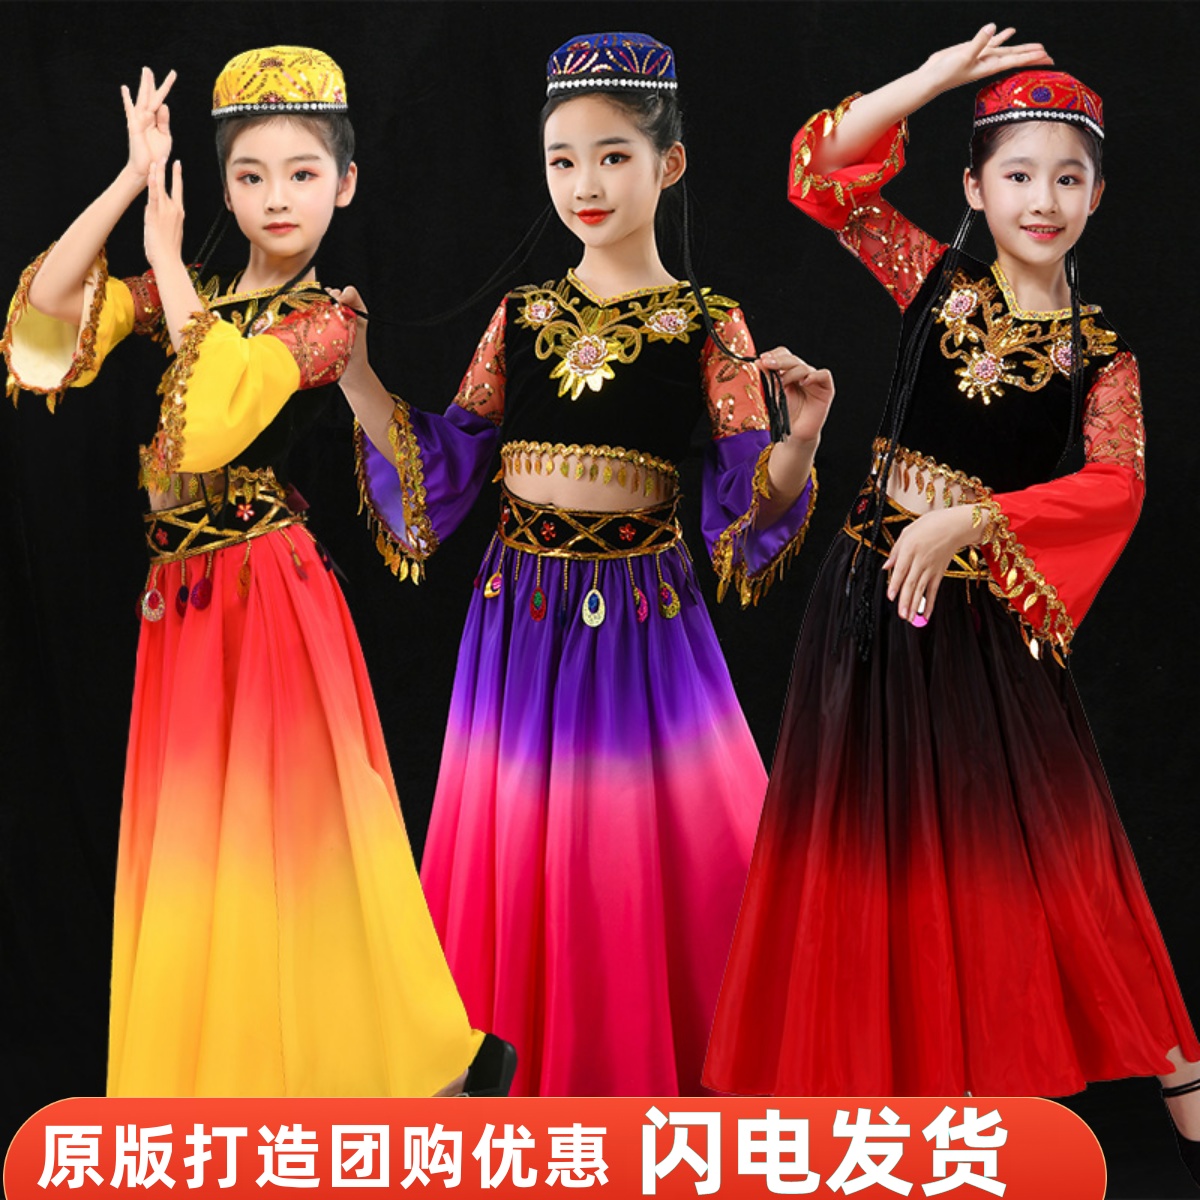 儿童新疆舞演出服女童维吾尔族服装哈萨克族少数民族女孩舞蹈服装